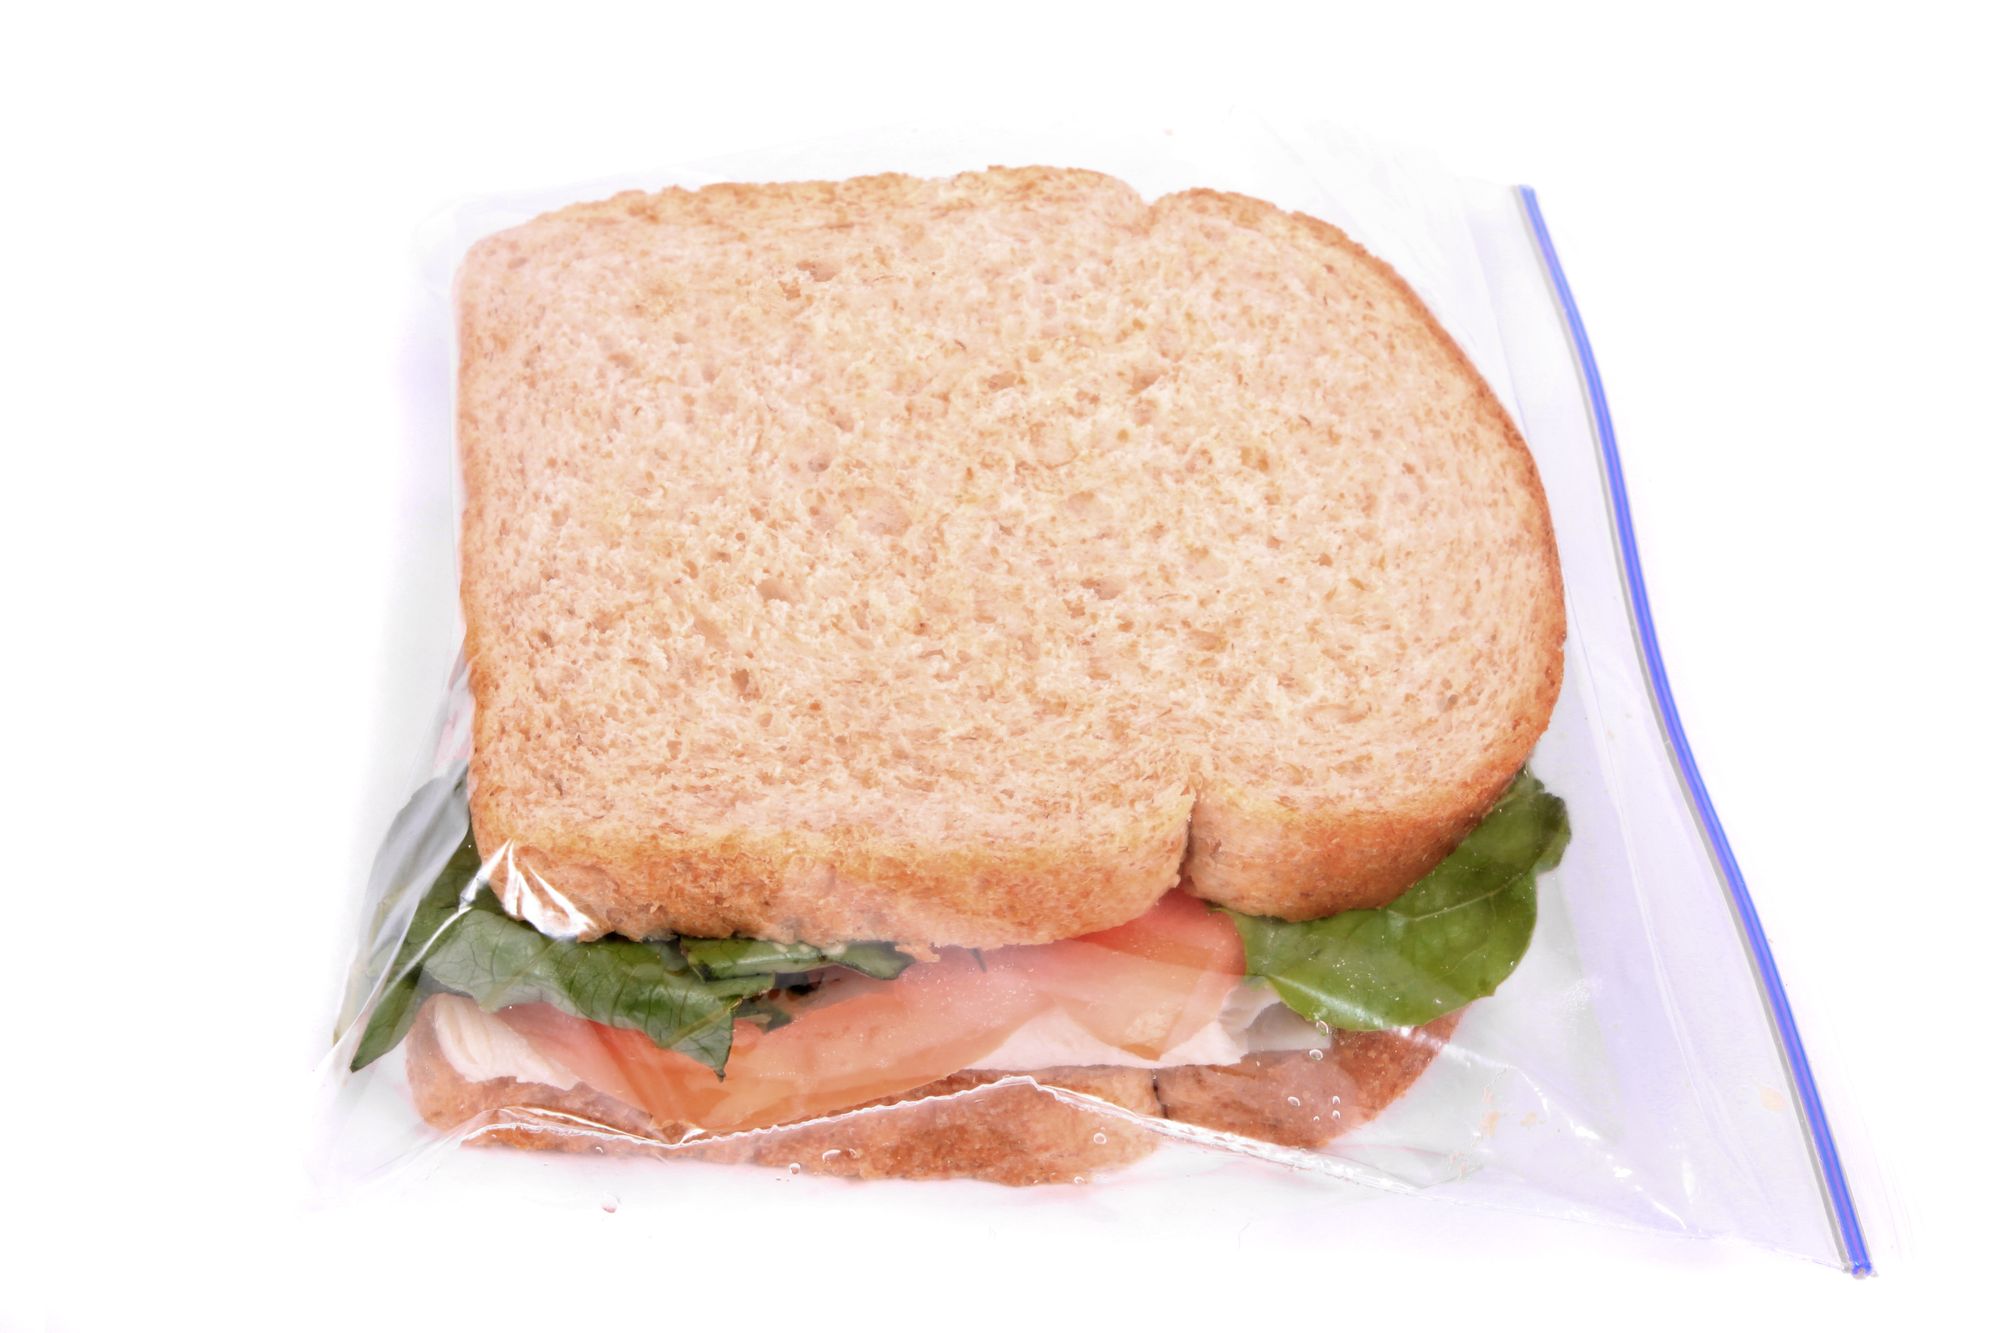 Sandwich Bags